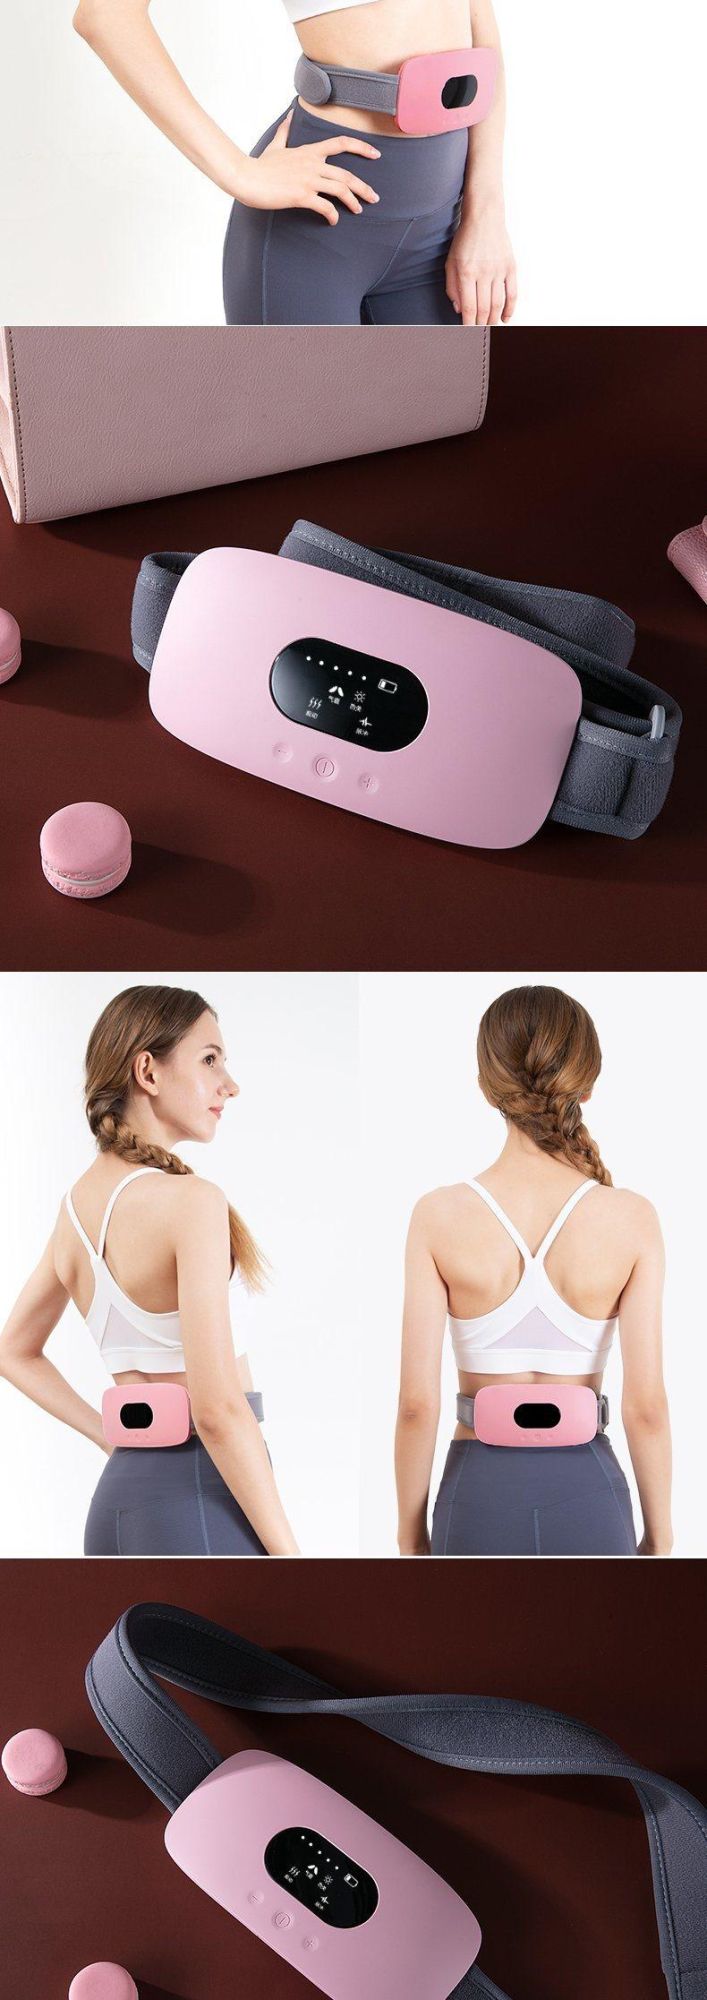 Hezheng Gift Relieve Menstrual Pain in Women High Quality Warm Waist Warm Belly Belt Massager